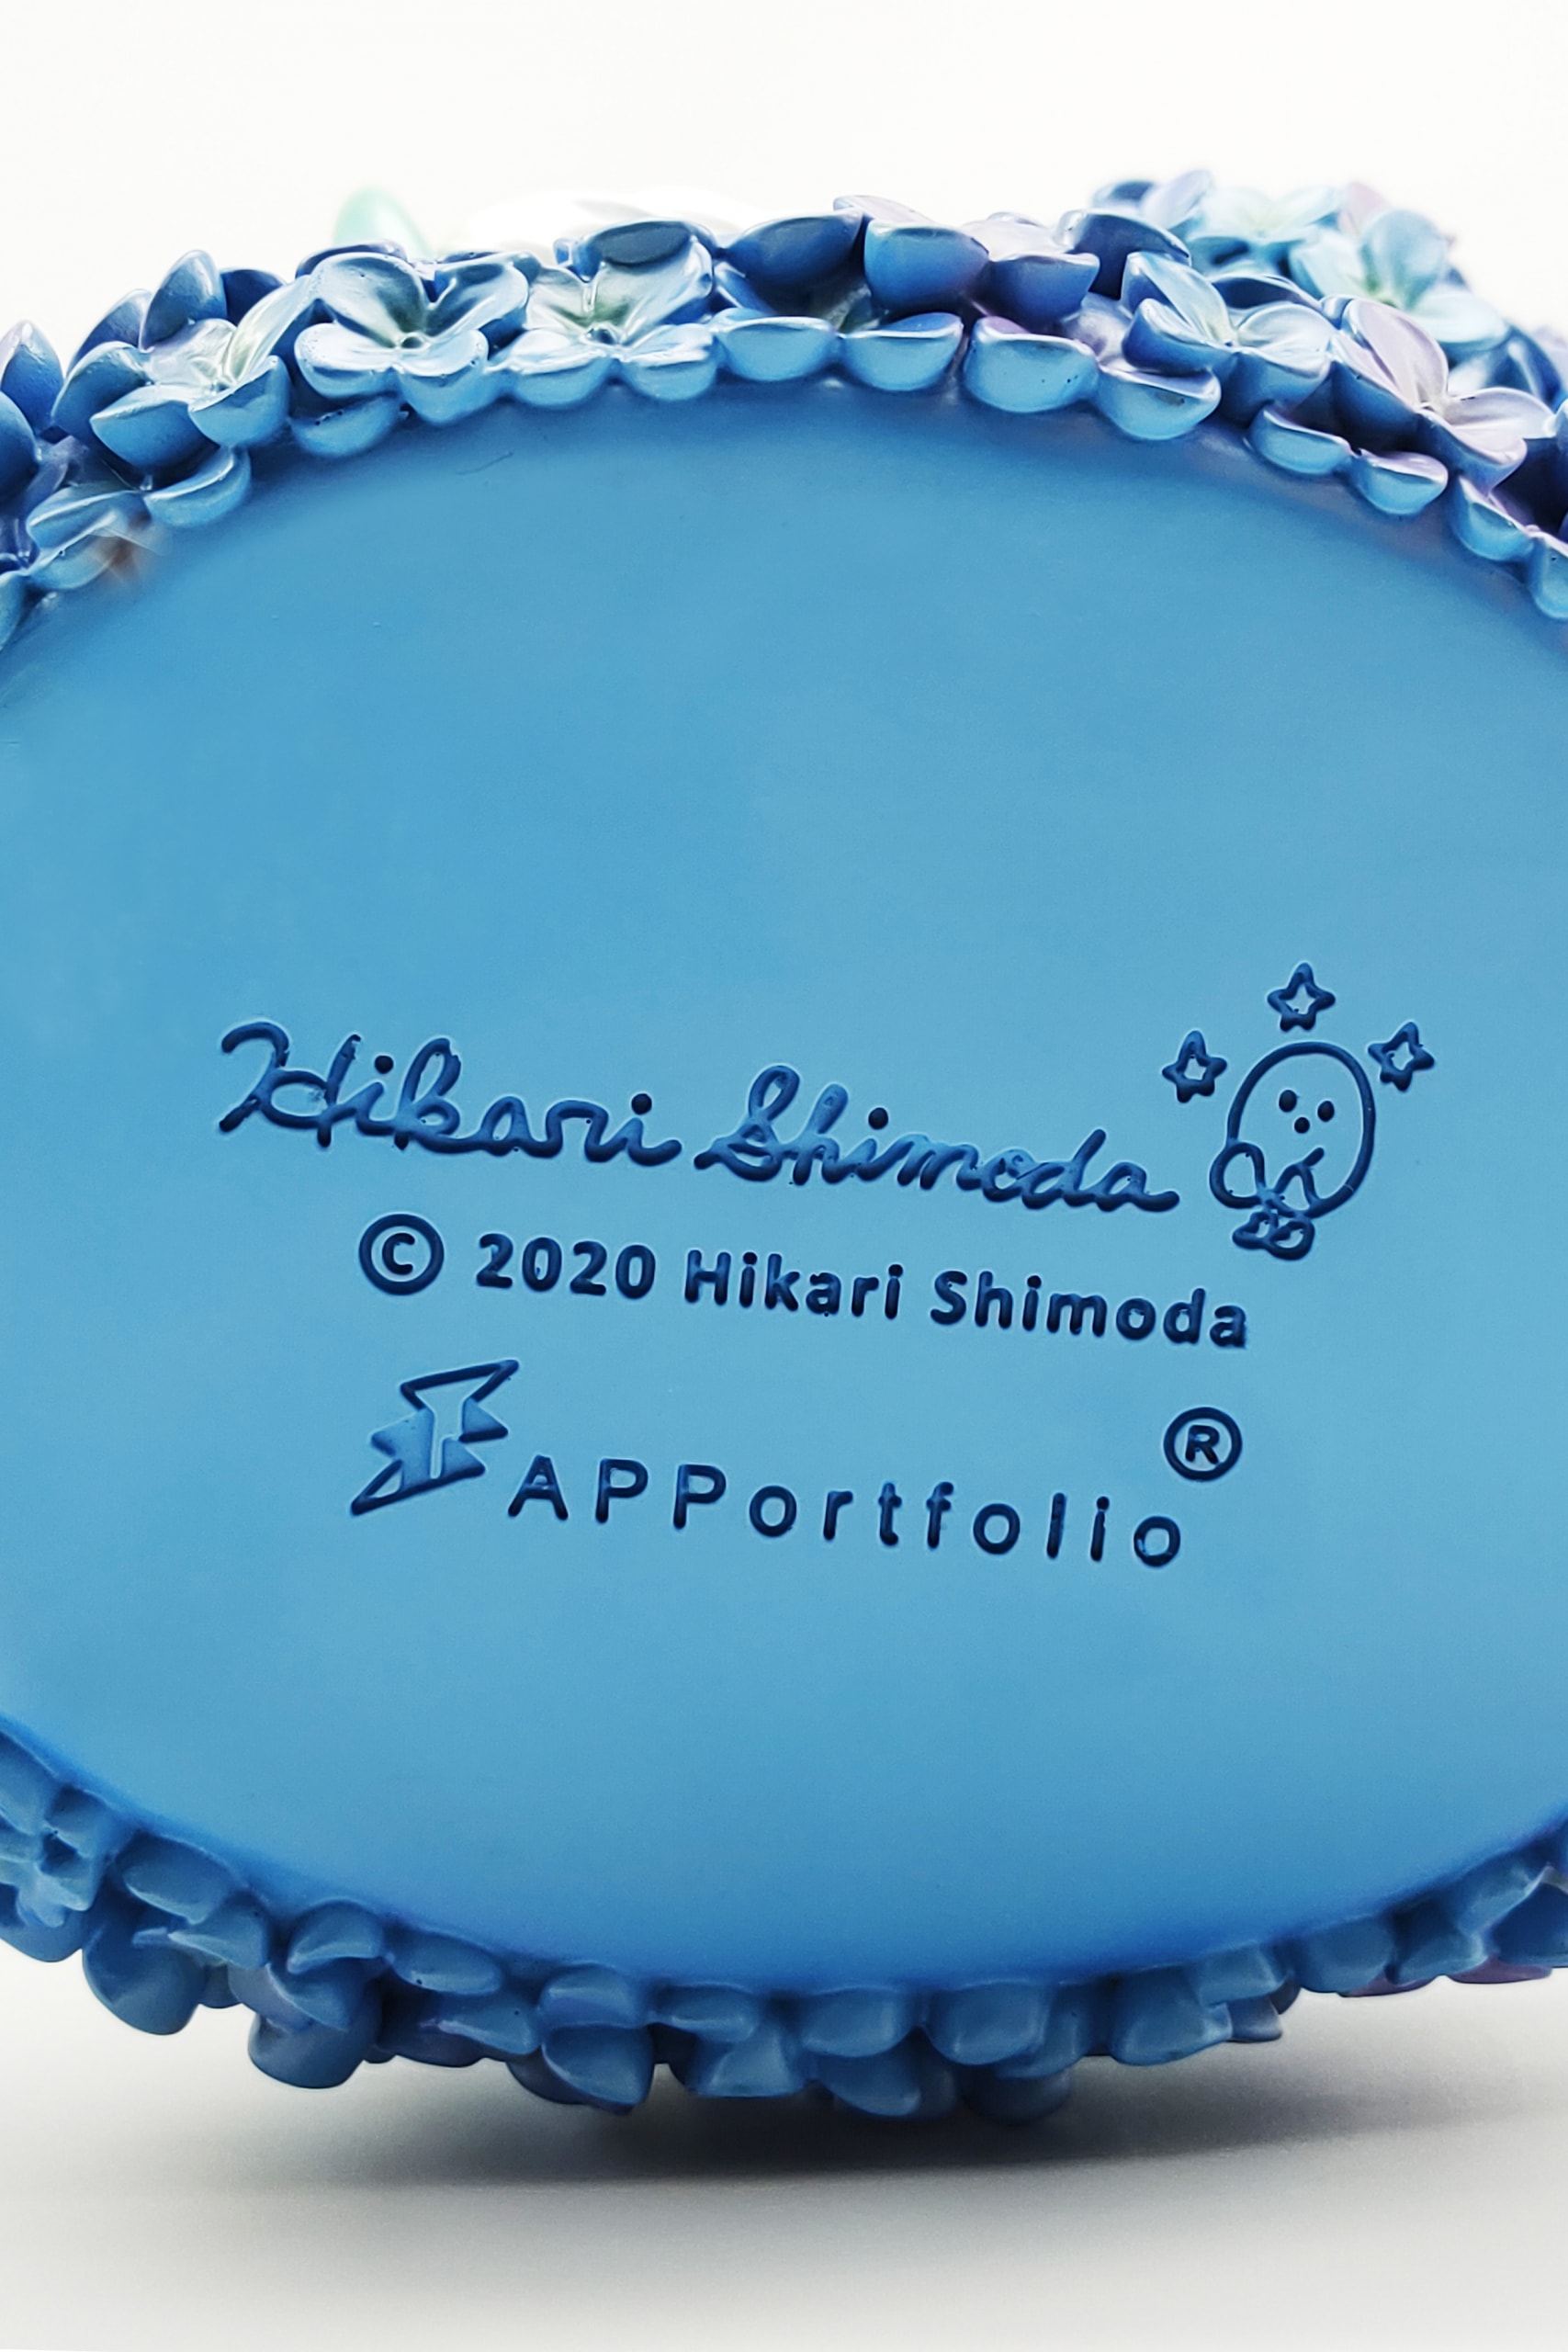 APPortfolio x Hikari Shimoda 全新情人节艺术藏品《Flower Child》登场